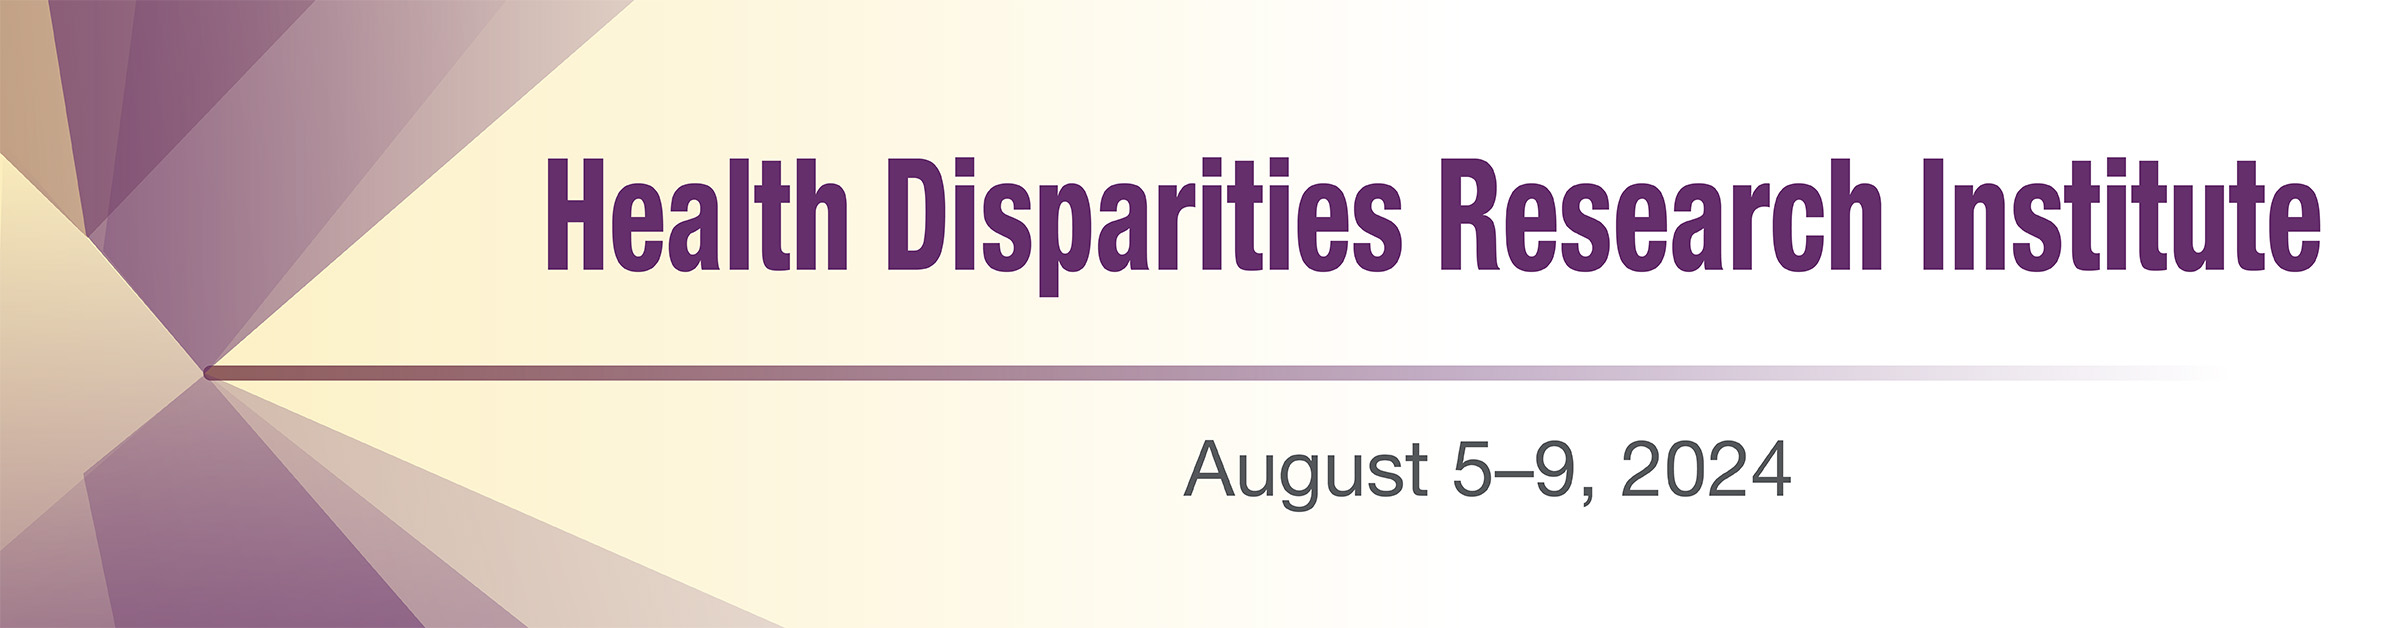 NIMHD Health Disparities Research Institute: Aug. 5-9, 2024